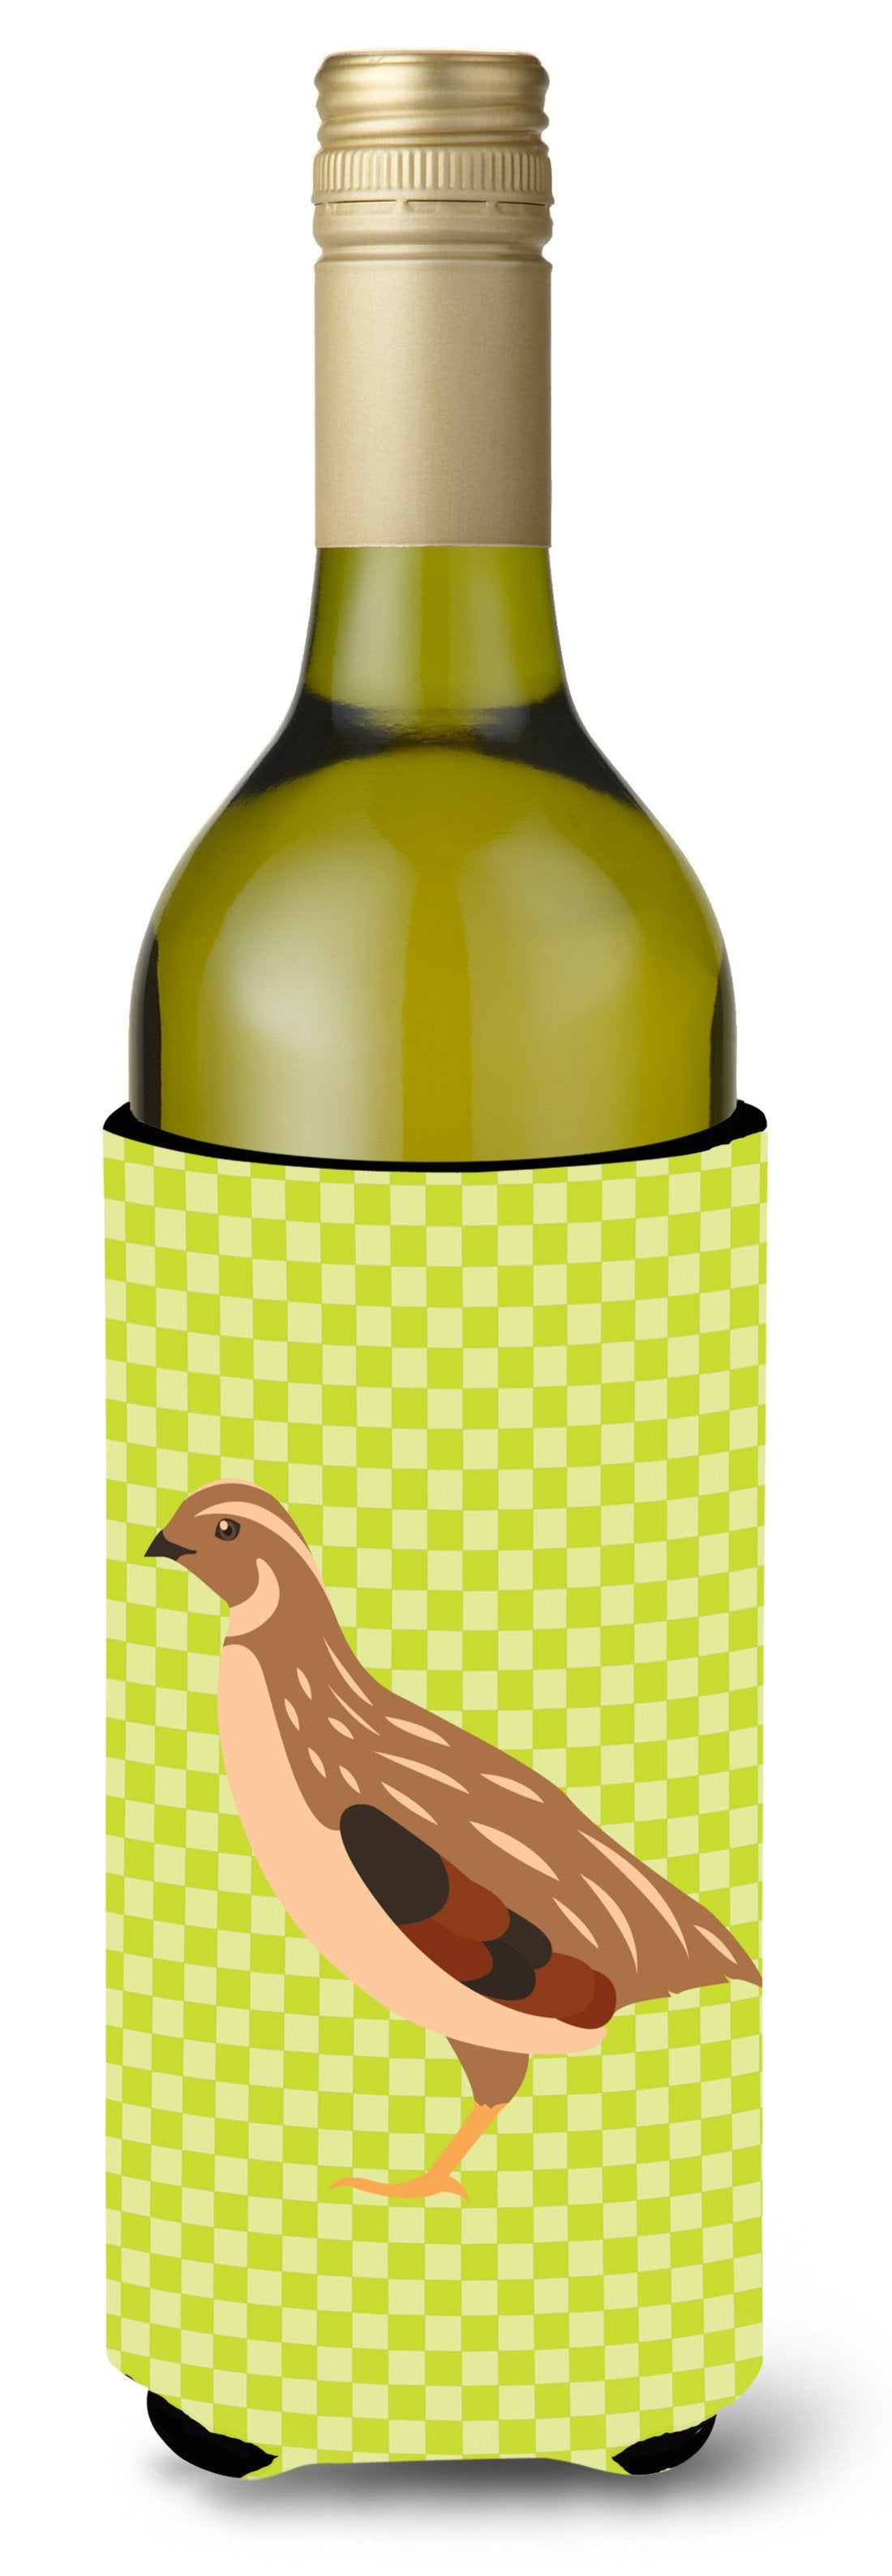 Golden Phoenix Quail Green Wine Bottle Beverge Insulator Hugger BB7781LITERK by Caroline's Treasures